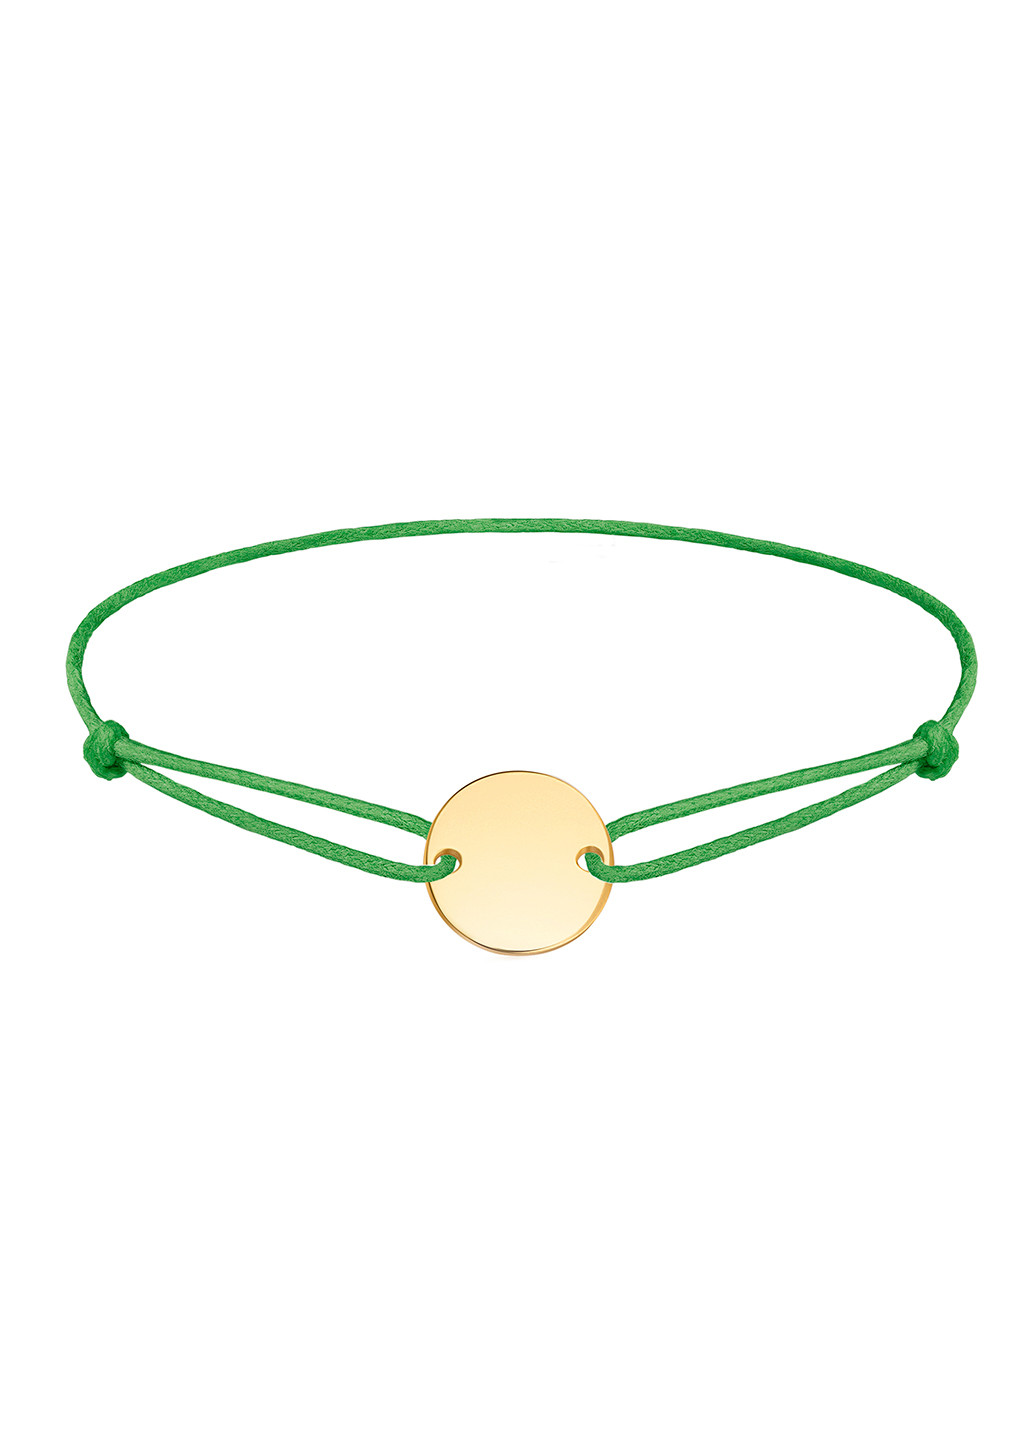 Позолочений браслет «Коло гудзик» 14-16 см зелений Peninsula (224609009)